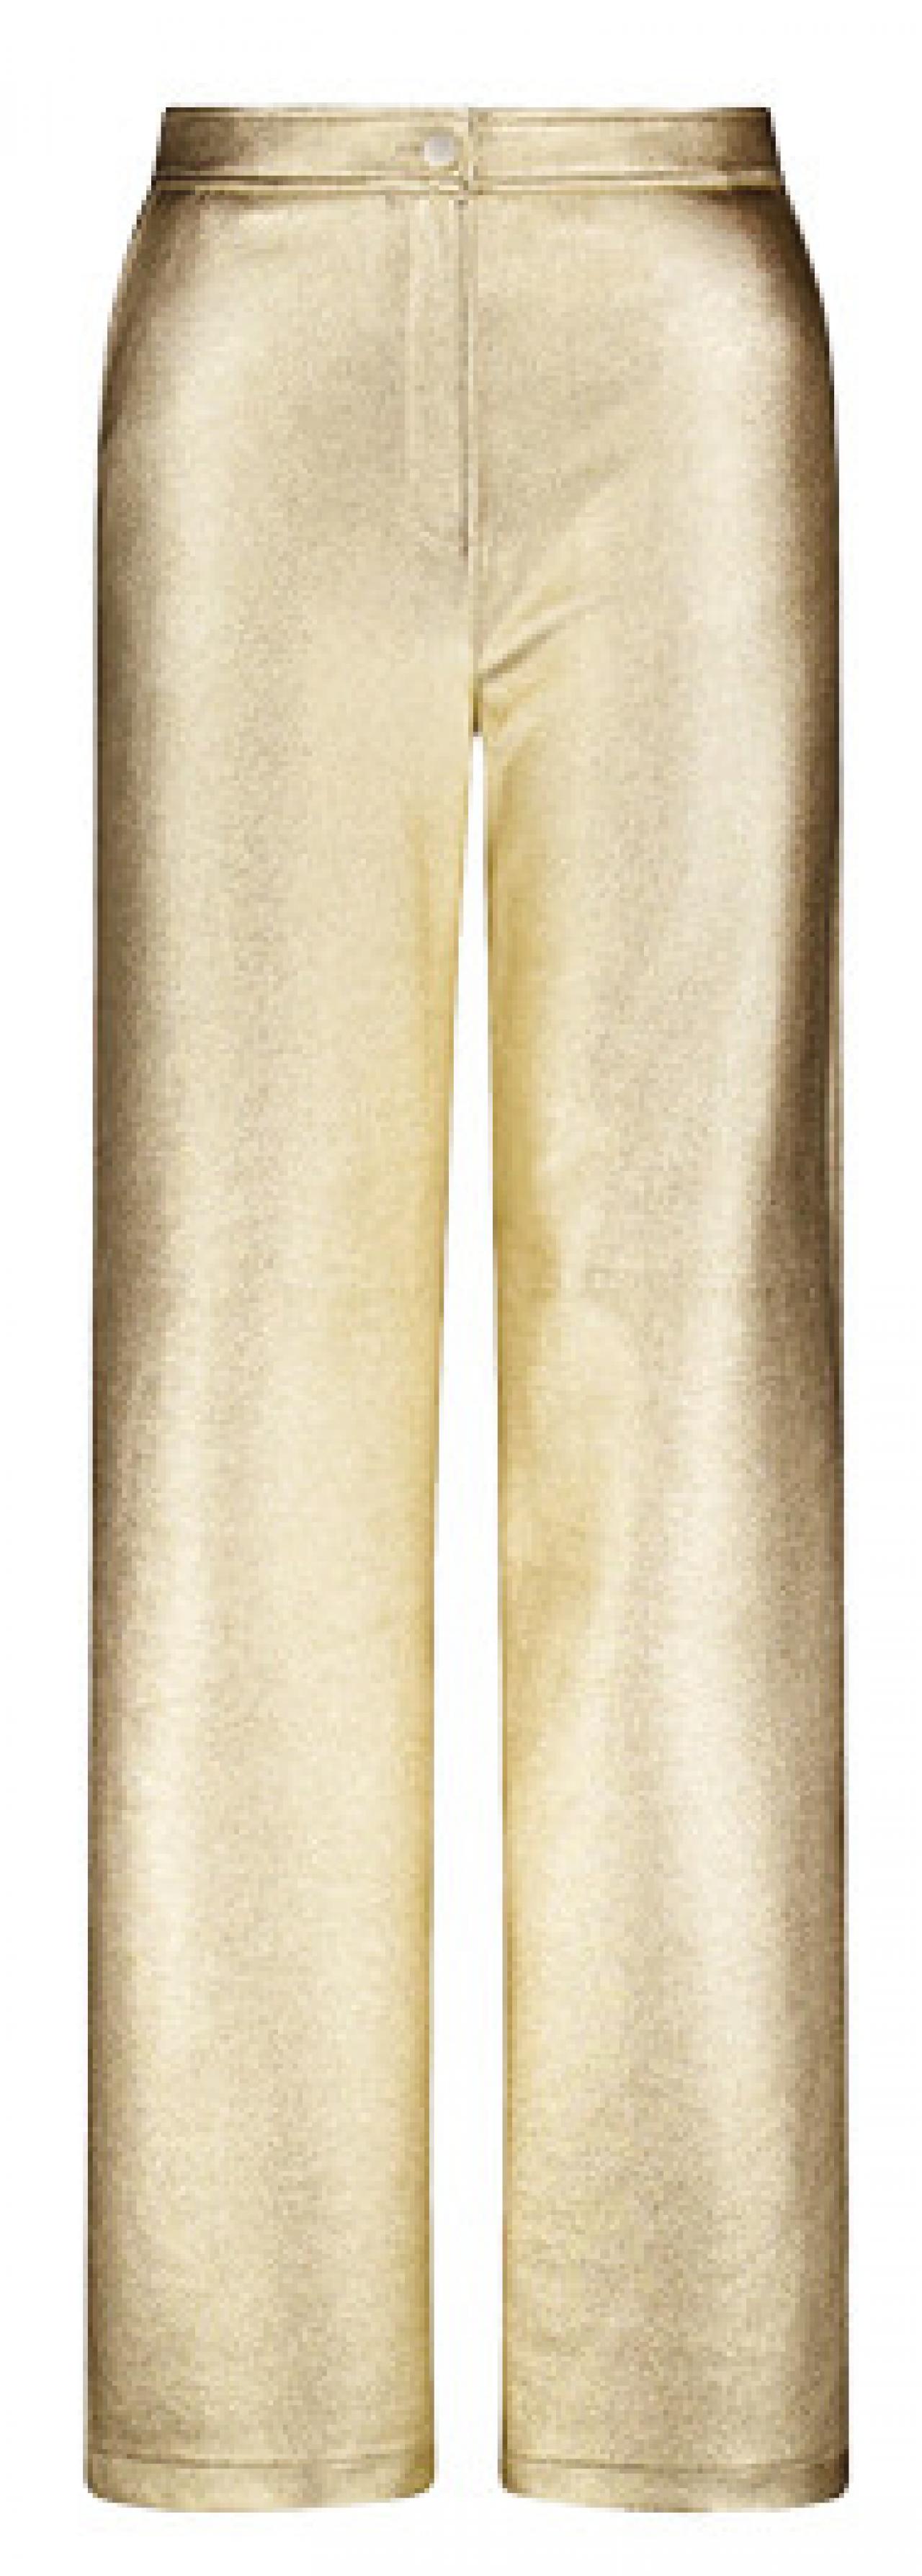 Goudkleurige broek – 69,99 euro – e5.